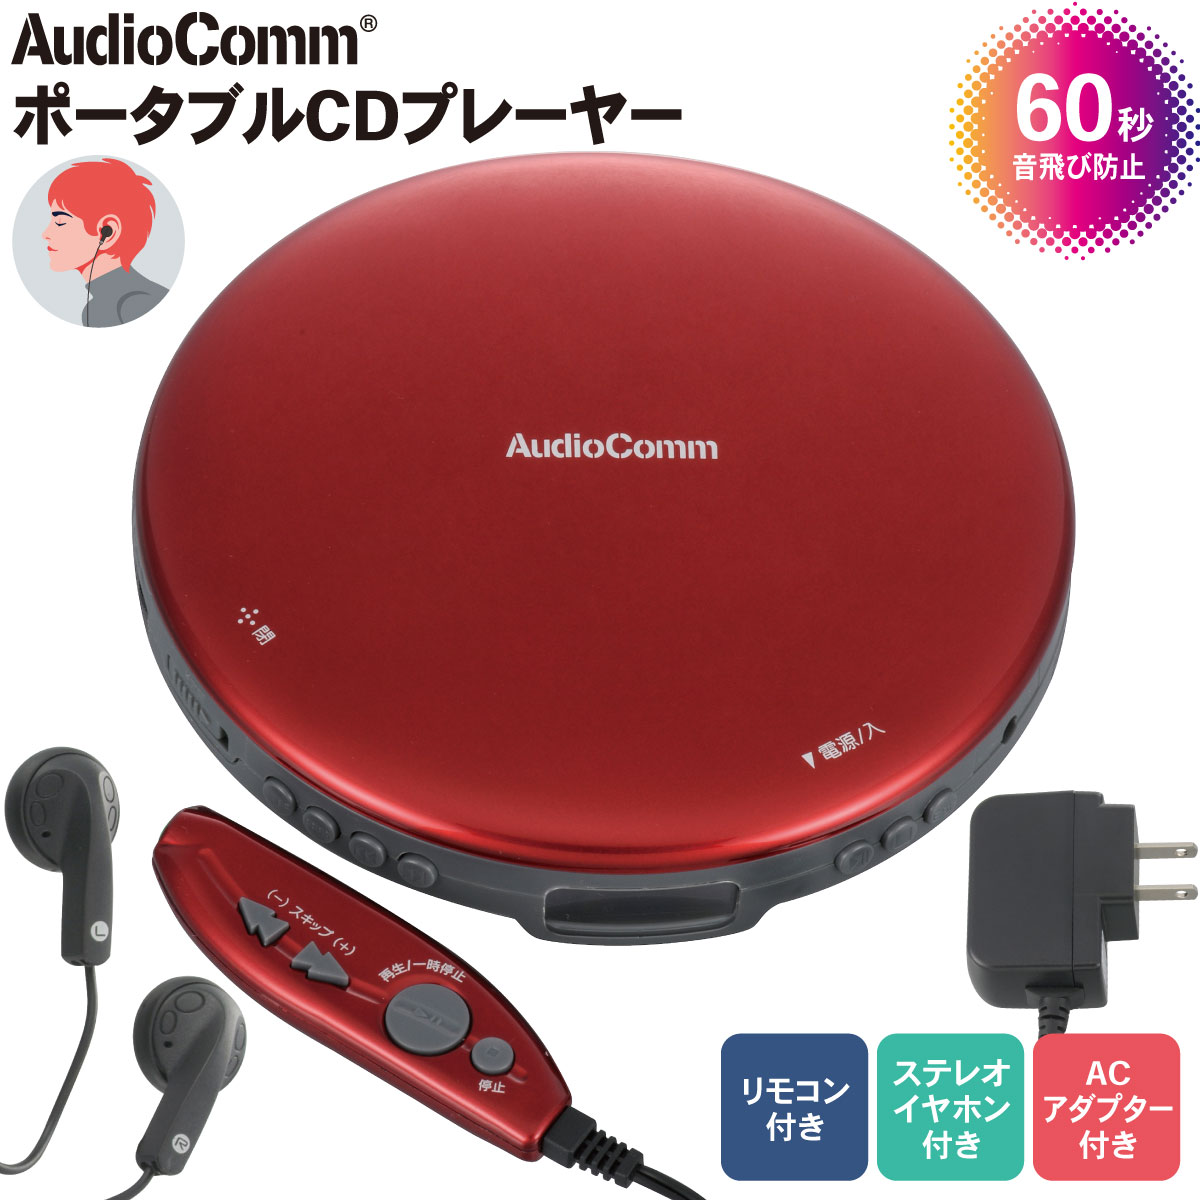 AudioComm ポータブルCDプレーヤー リモコン/ACアダプター付き レッド｜CDP-3870Z-R 03-5006 オーム電機 1